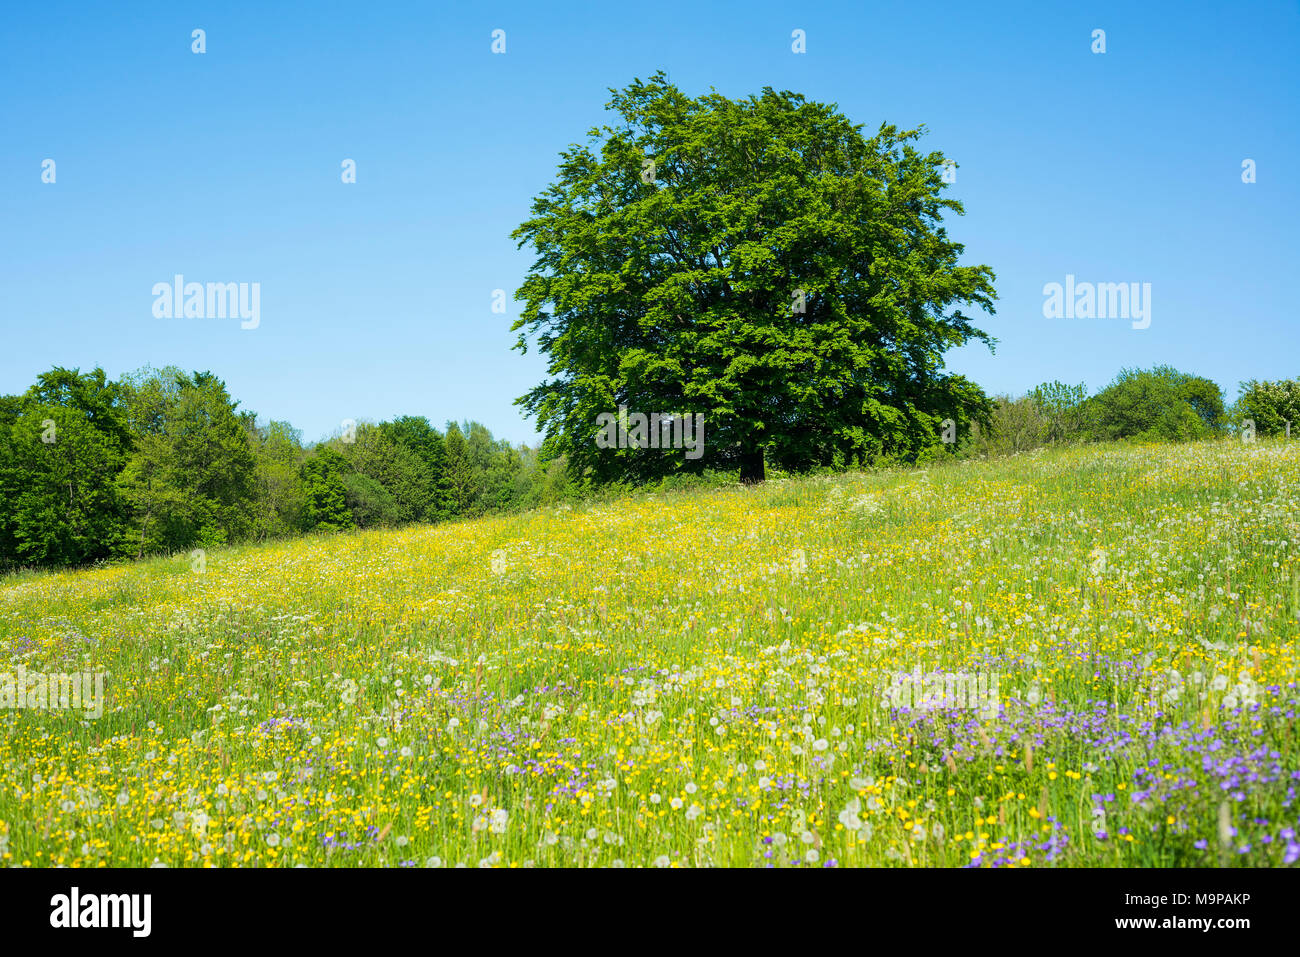 Le hêtre commun (Fagus sylvatica) est en prairie en fleurs, la Biosphère Rhön, Hesse, Allemagne Banque D'Images